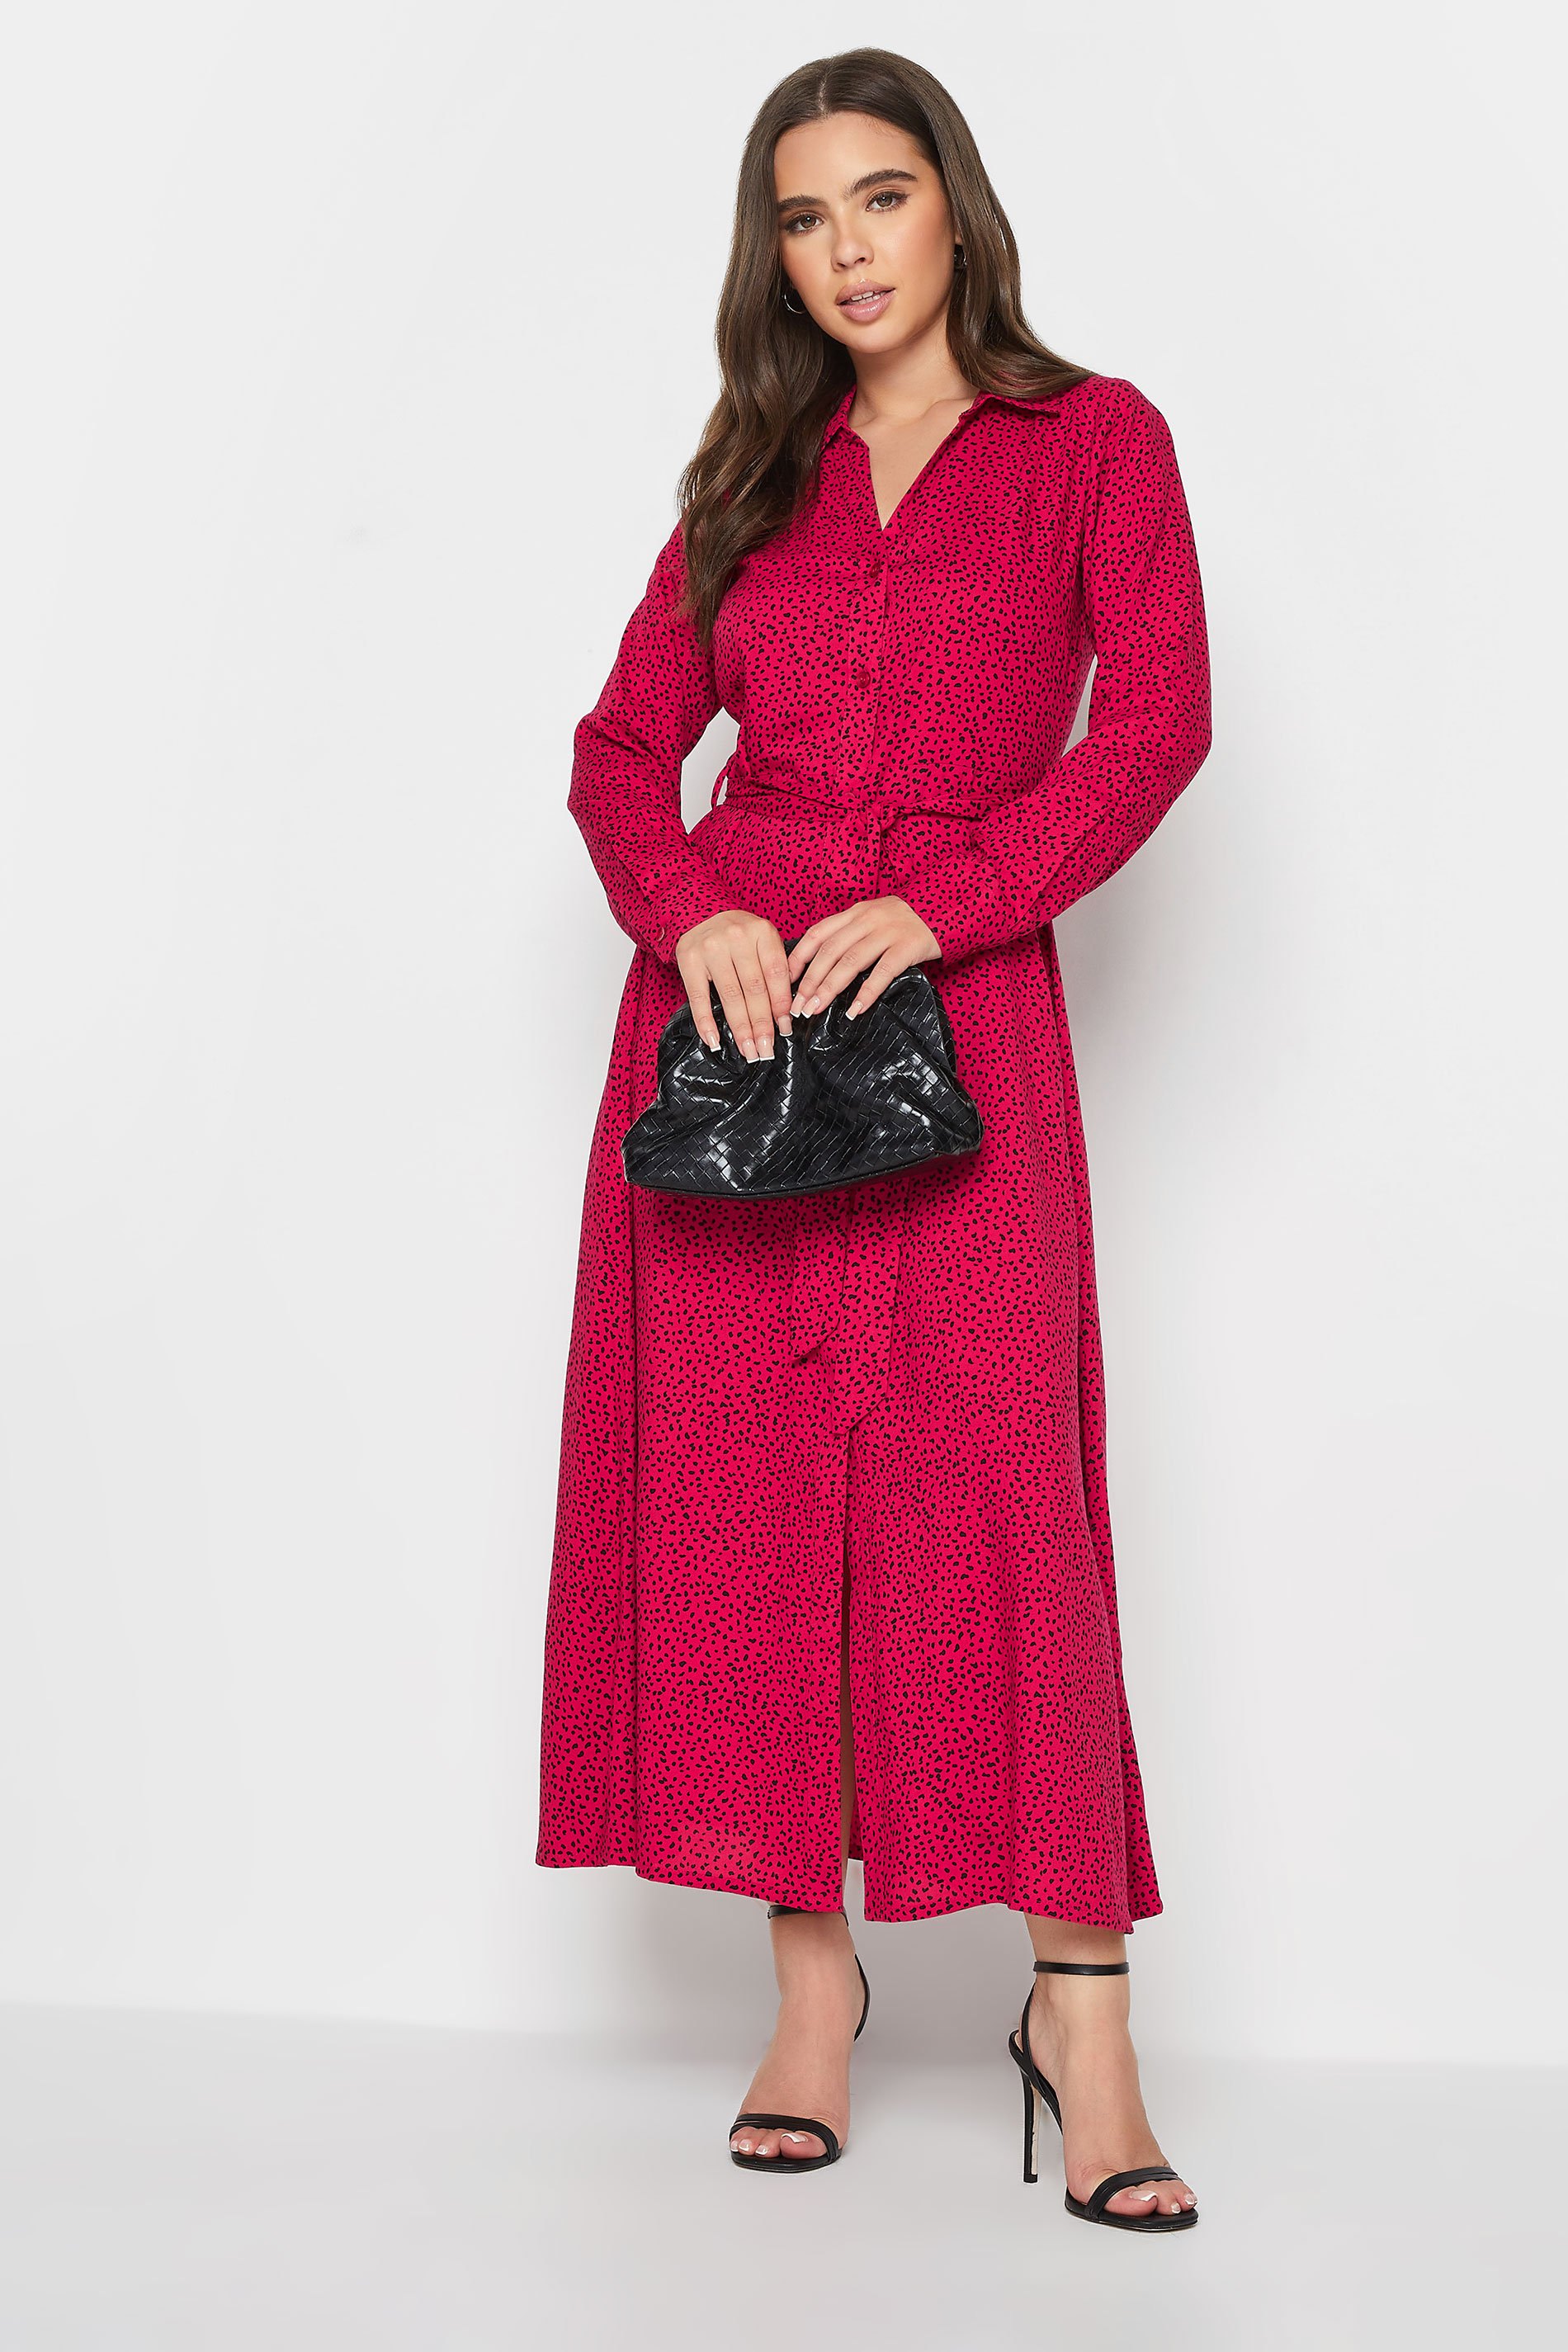 Petite Red Dalmatian Print Long Sleeve Maxi Shirt Dress | PixieGirl 3